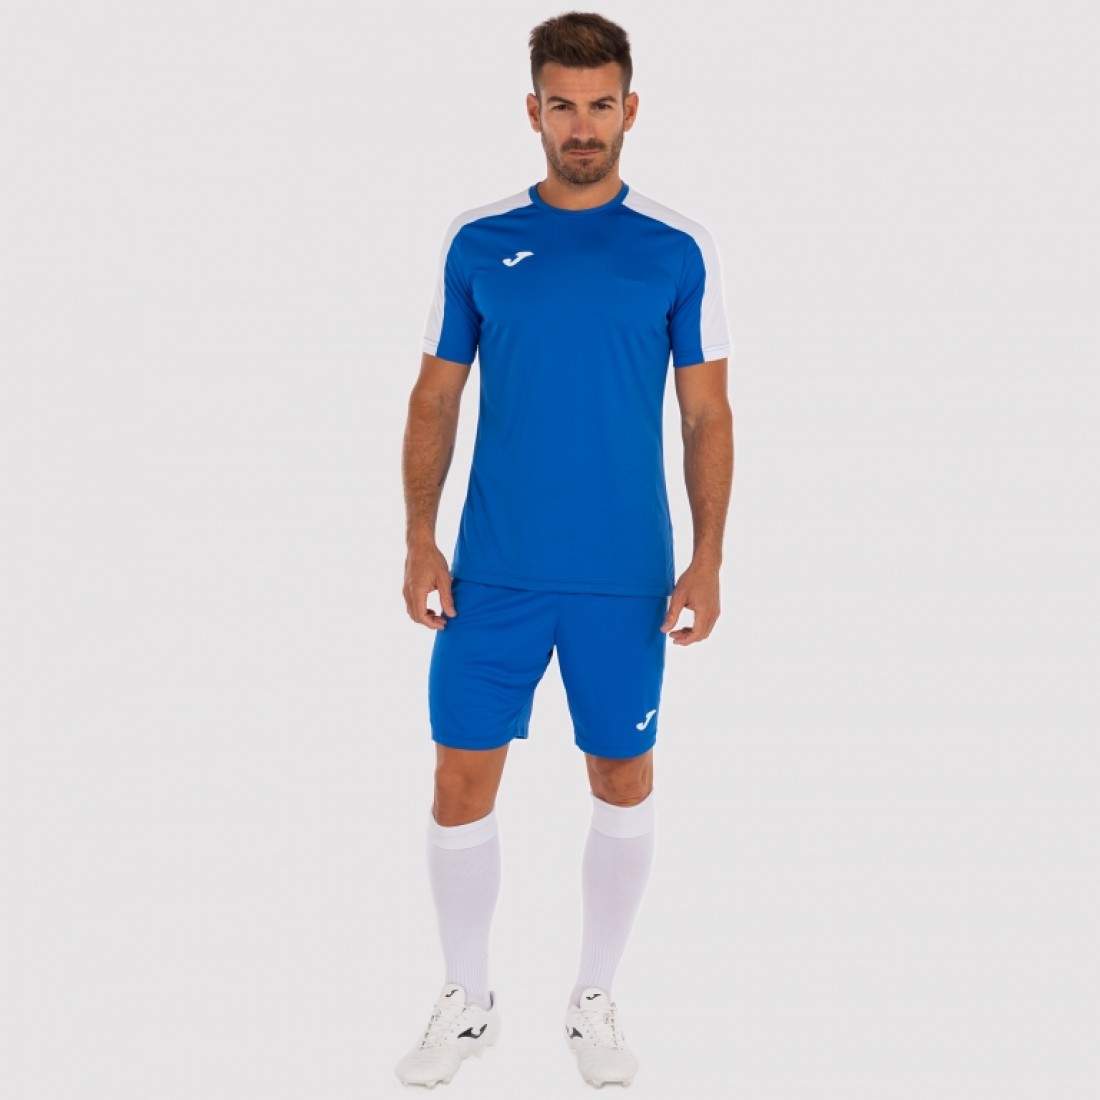 Joma Soccer Kits on Sale including Joma Kits, Joma Shirt, Joma Shorts ...